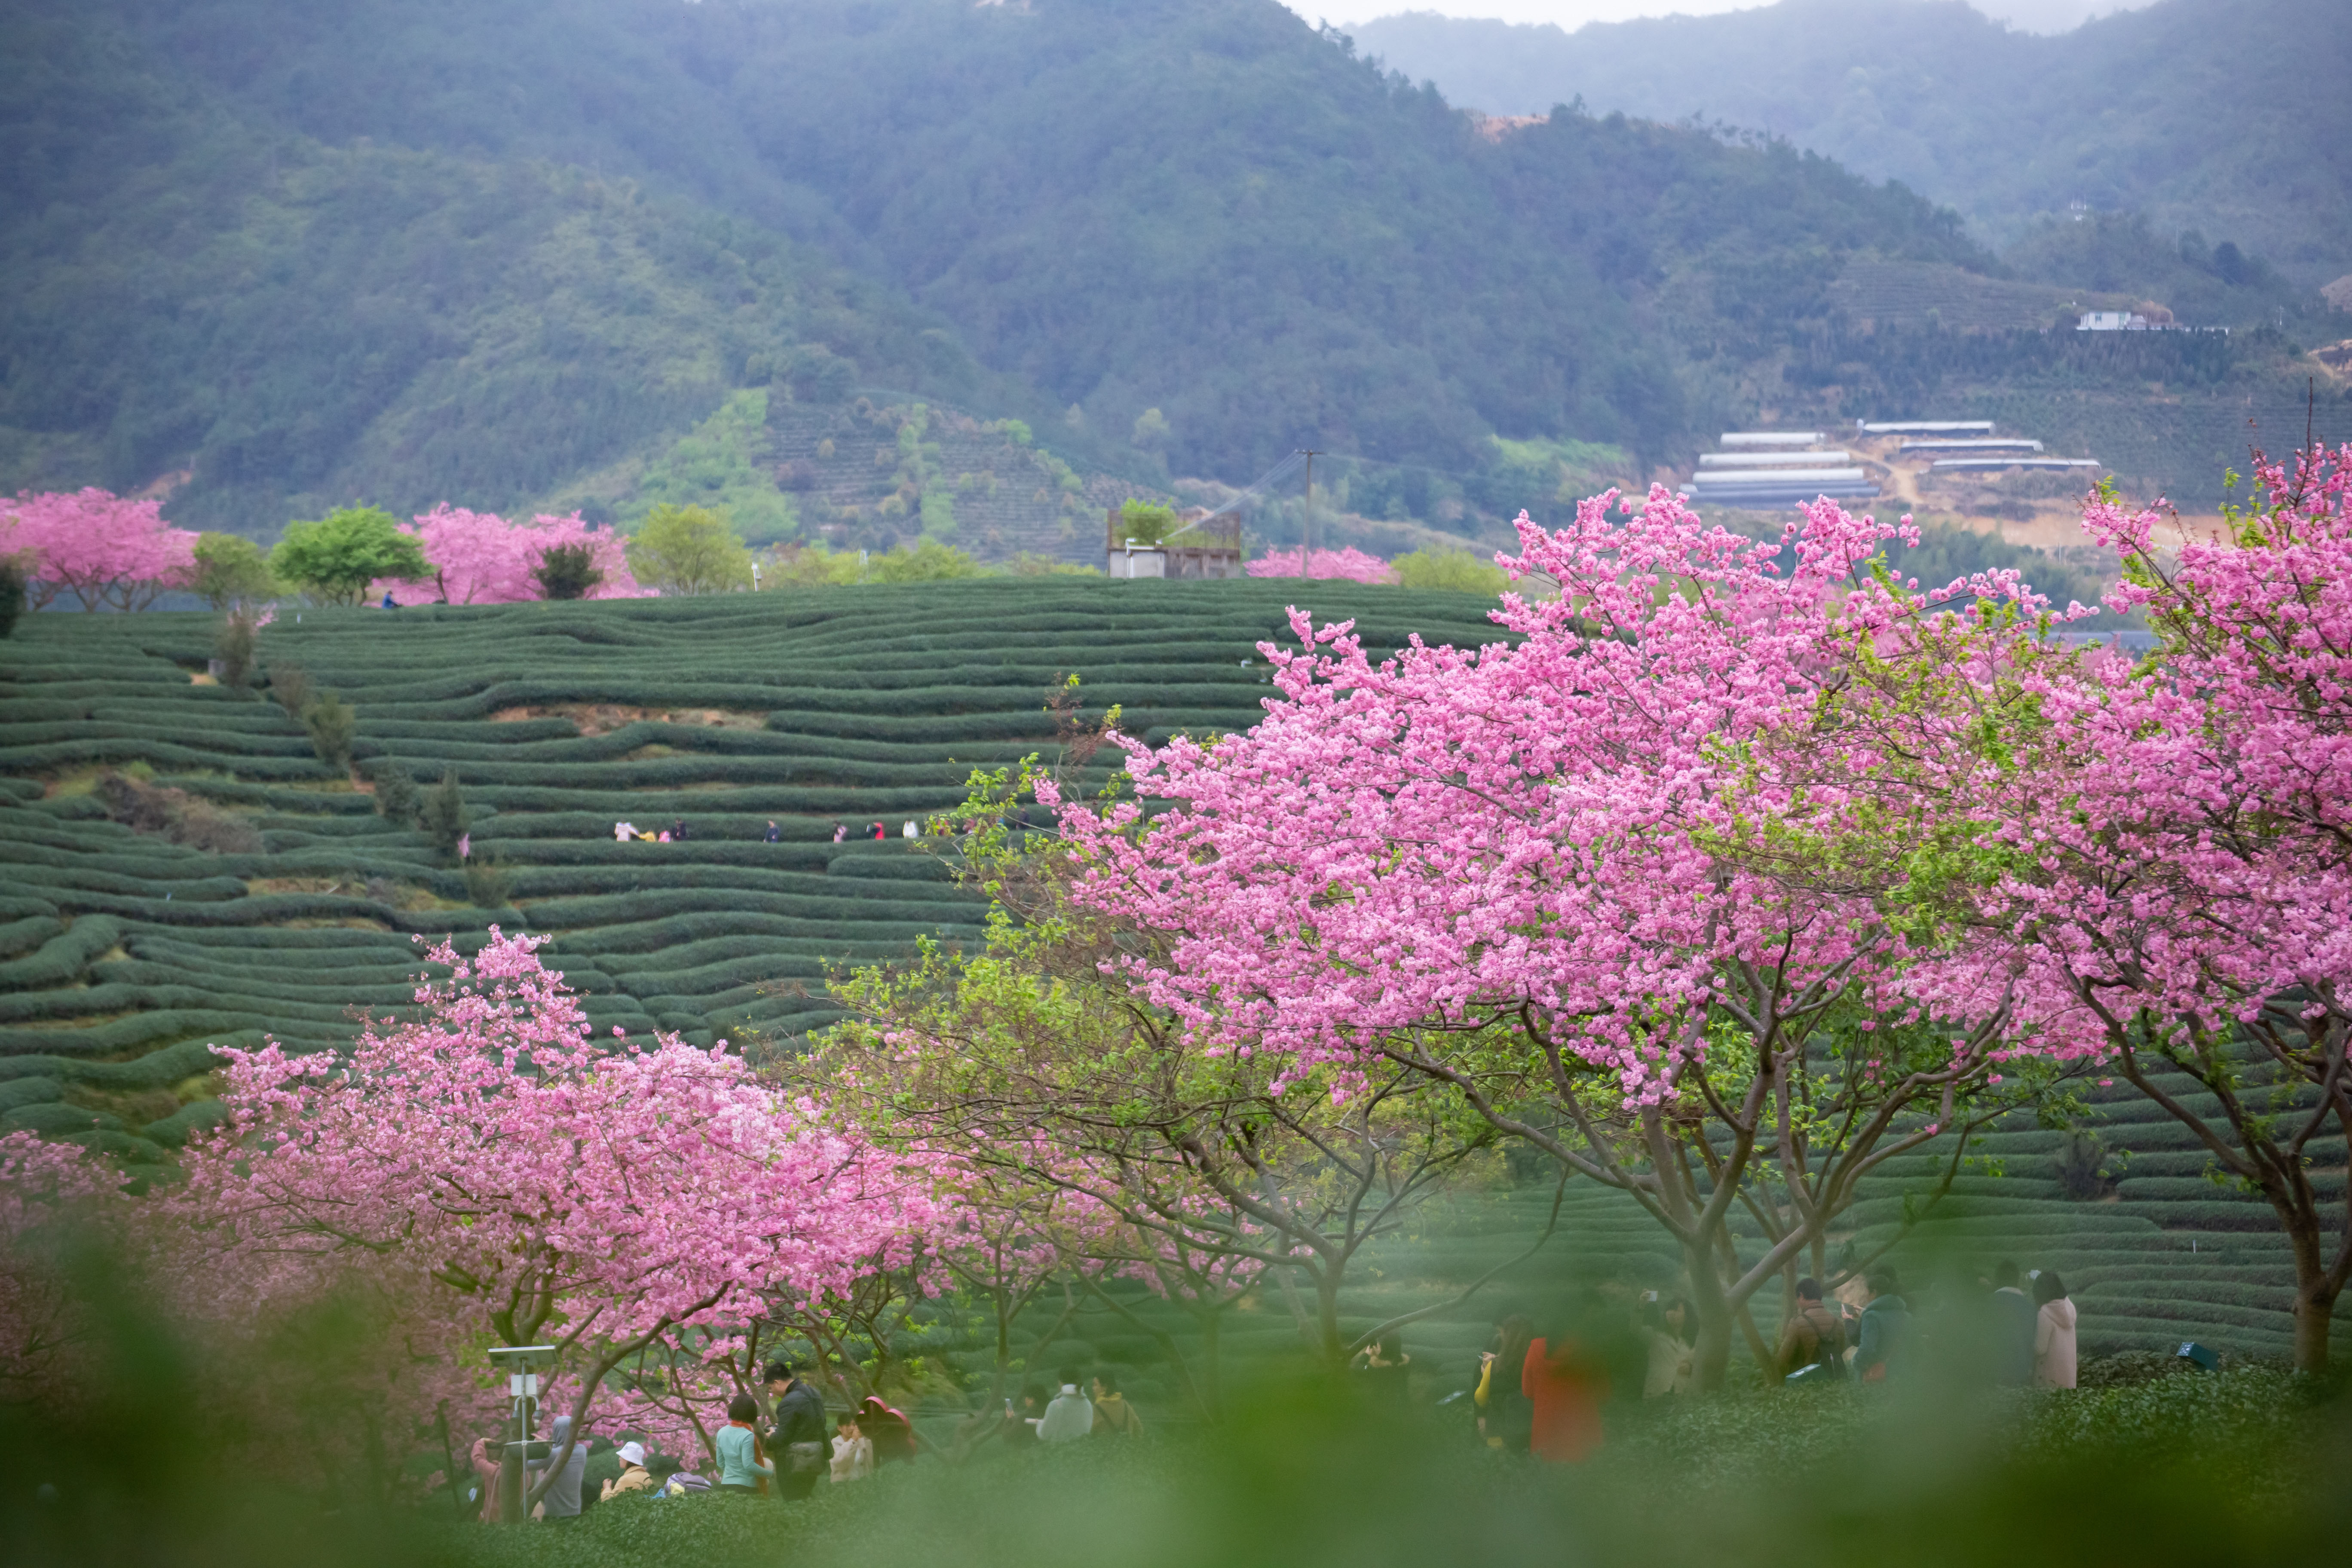 远山,茶田,和樱花,好一副美丽的田园风光